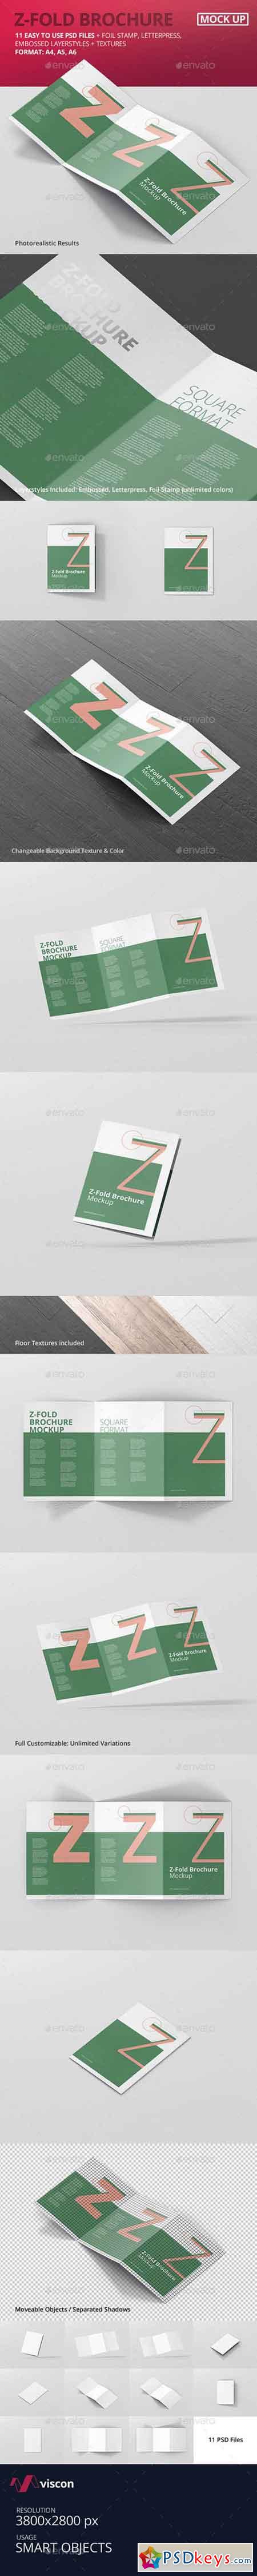 Z-Fold Brochure Mockup - Din A4 A5 A6 19972252